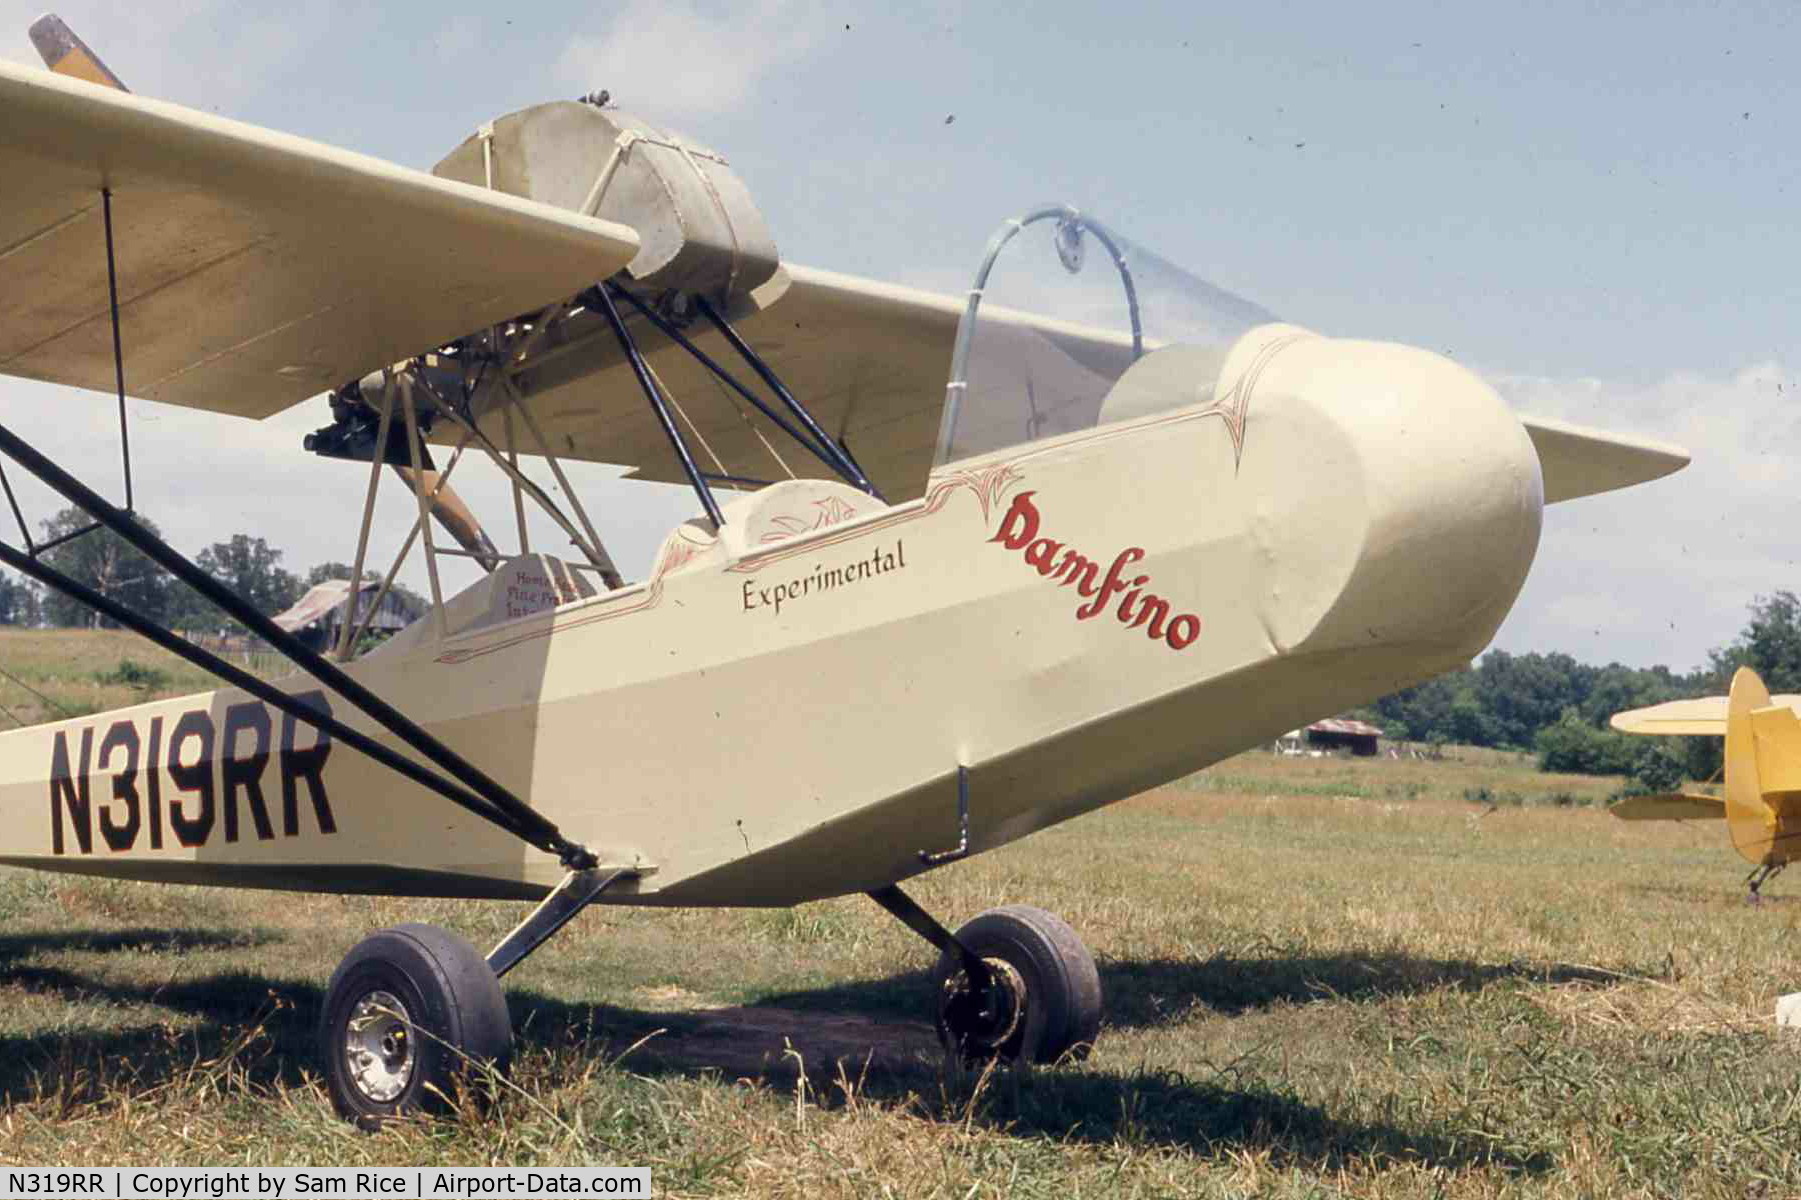 N319RR, 1974 Woodys Pusher WAS-2 C/N 166, as first flown